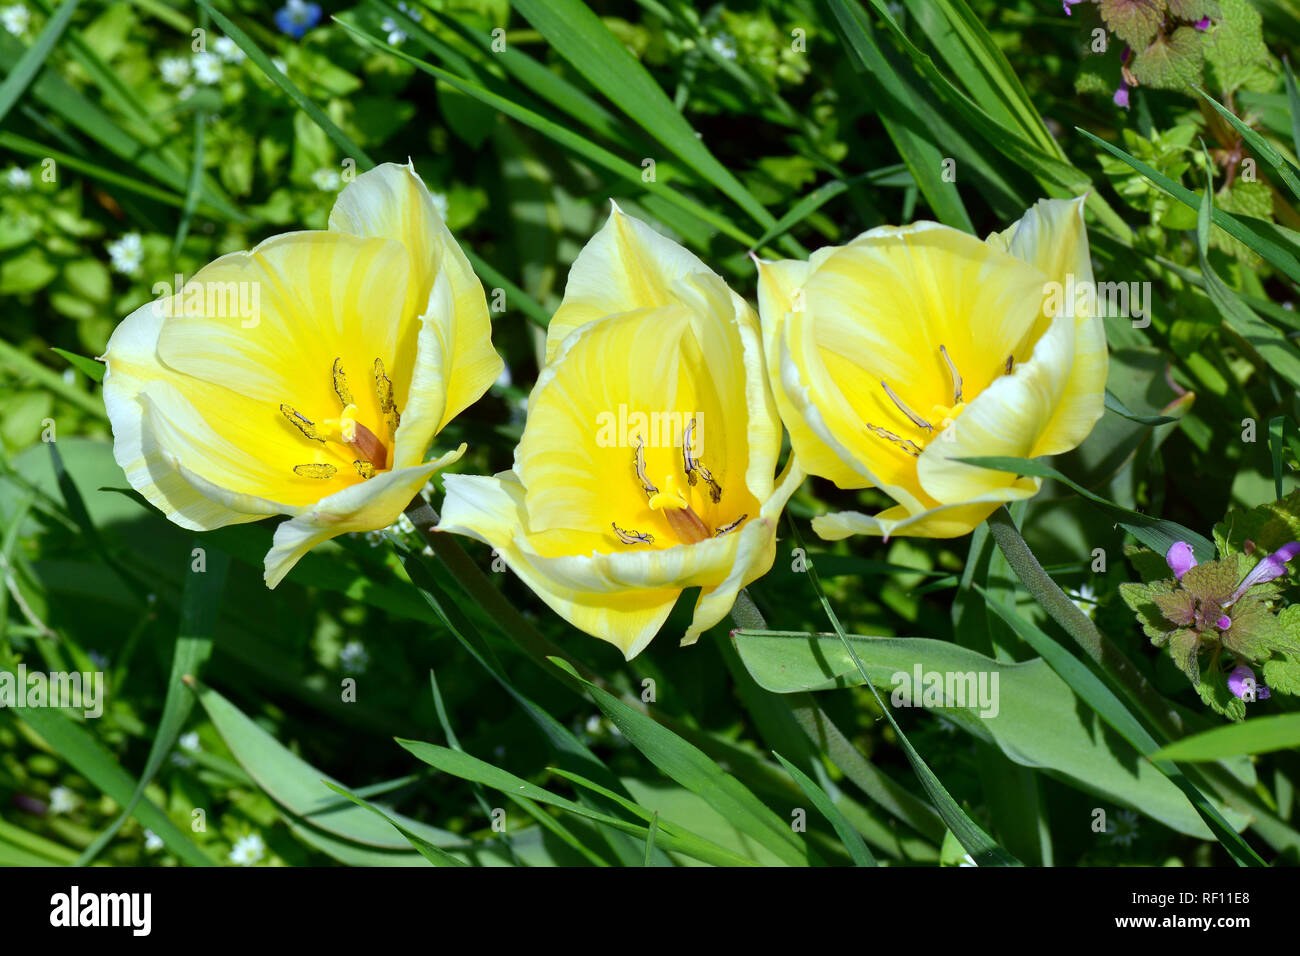 Tulip, Tulpen, tulipán, Tulipa sp. Foto Stock